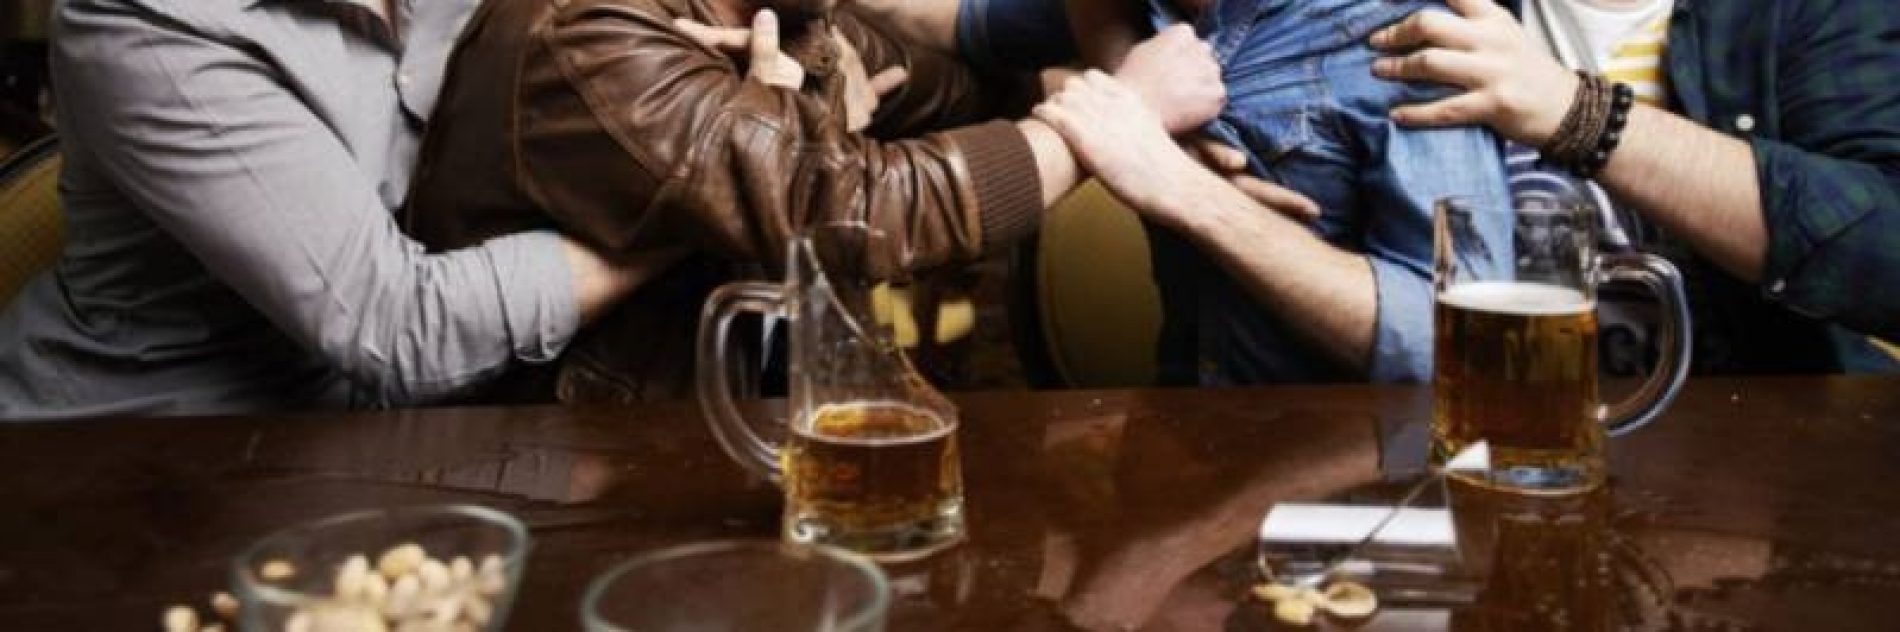 OLÍMPIA: Garçom é agredido por cliente que aparentava estar embriagado